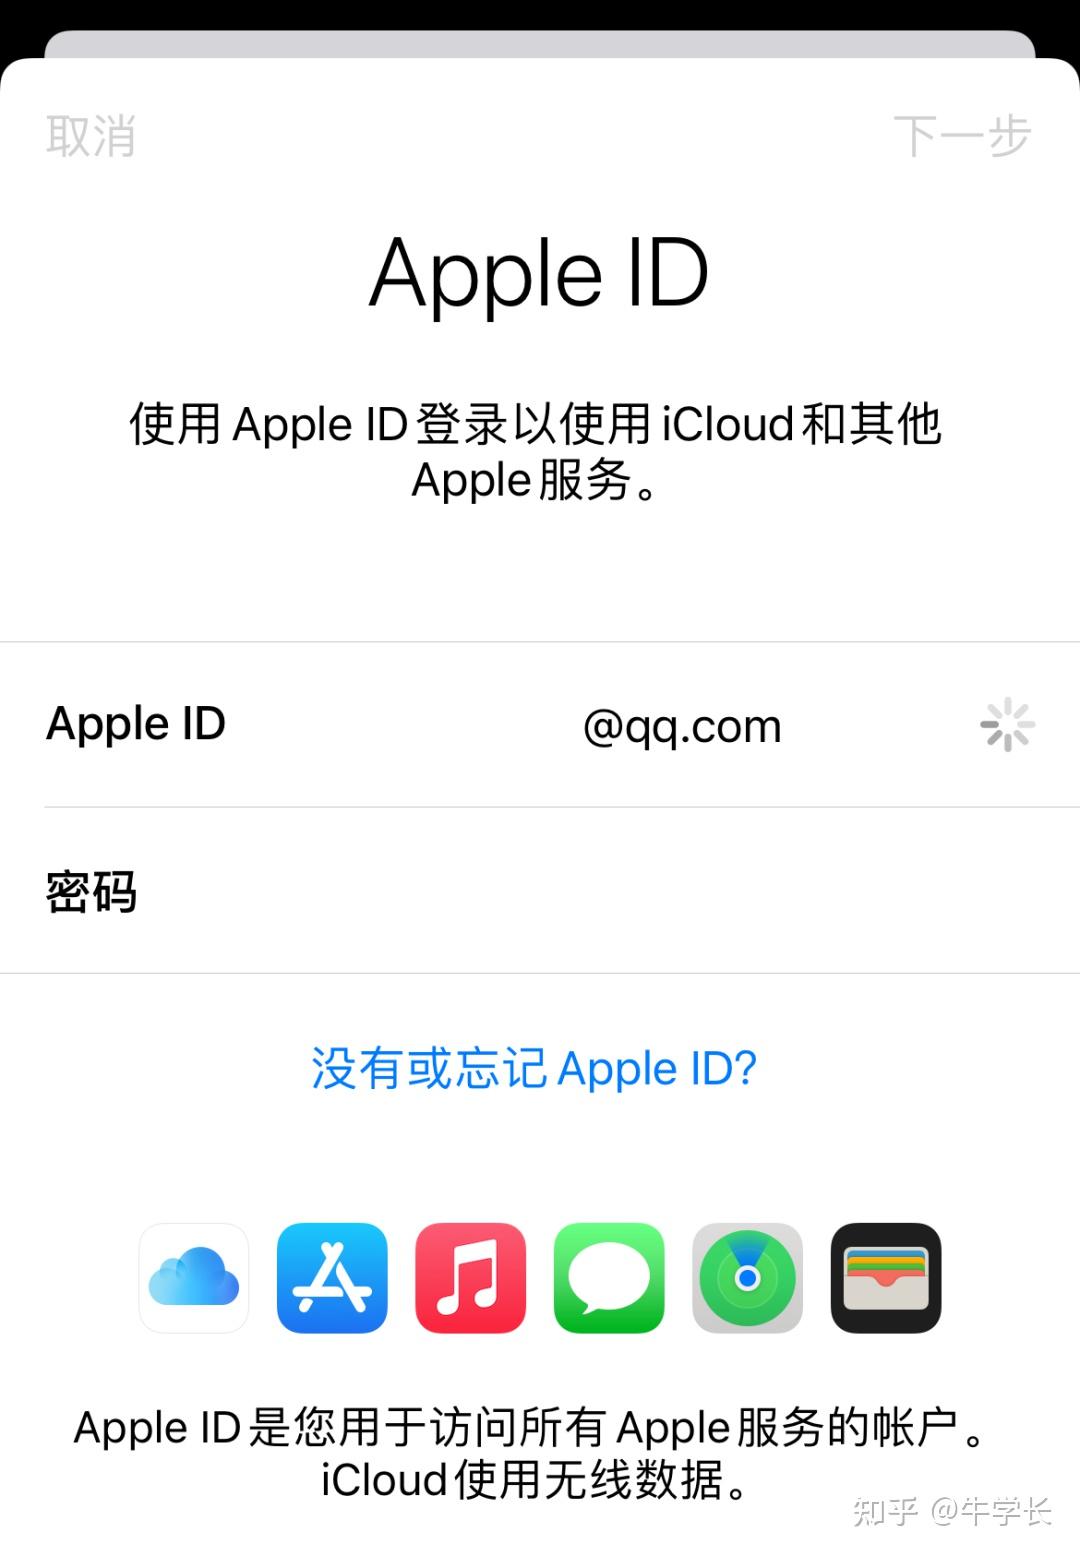 备忘录等数据后,再使用同一apple id账号登录新iphone,开启icloud相关